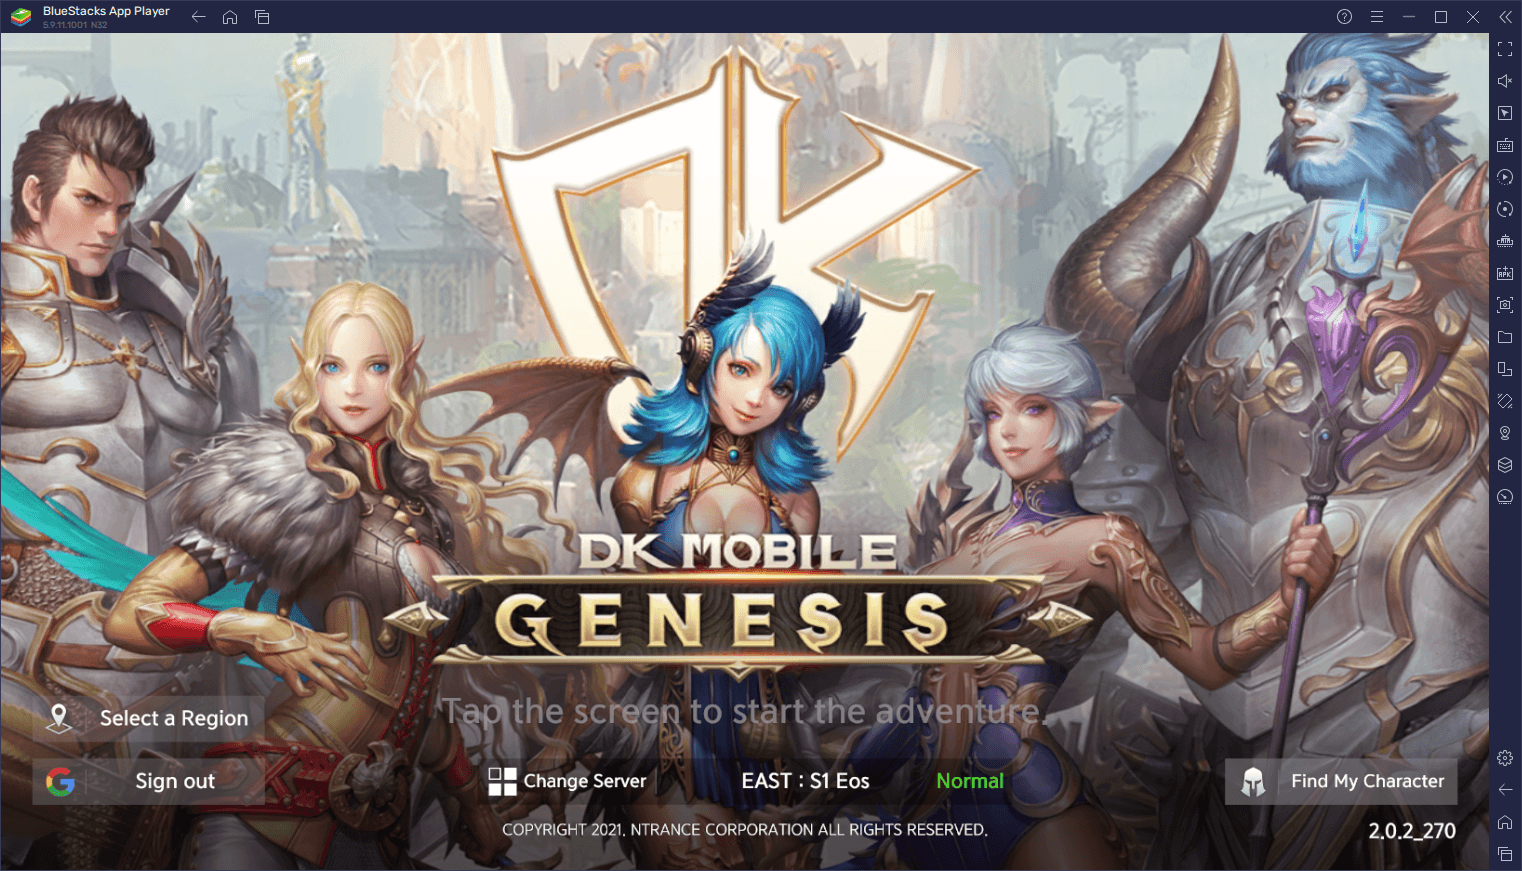 DK Mobile: Genesis sur PC – Comment Utiliser BlueStacks pour Optimiser Votre Expérience de Jeu dans ce Nouveau MMORPG Mobile